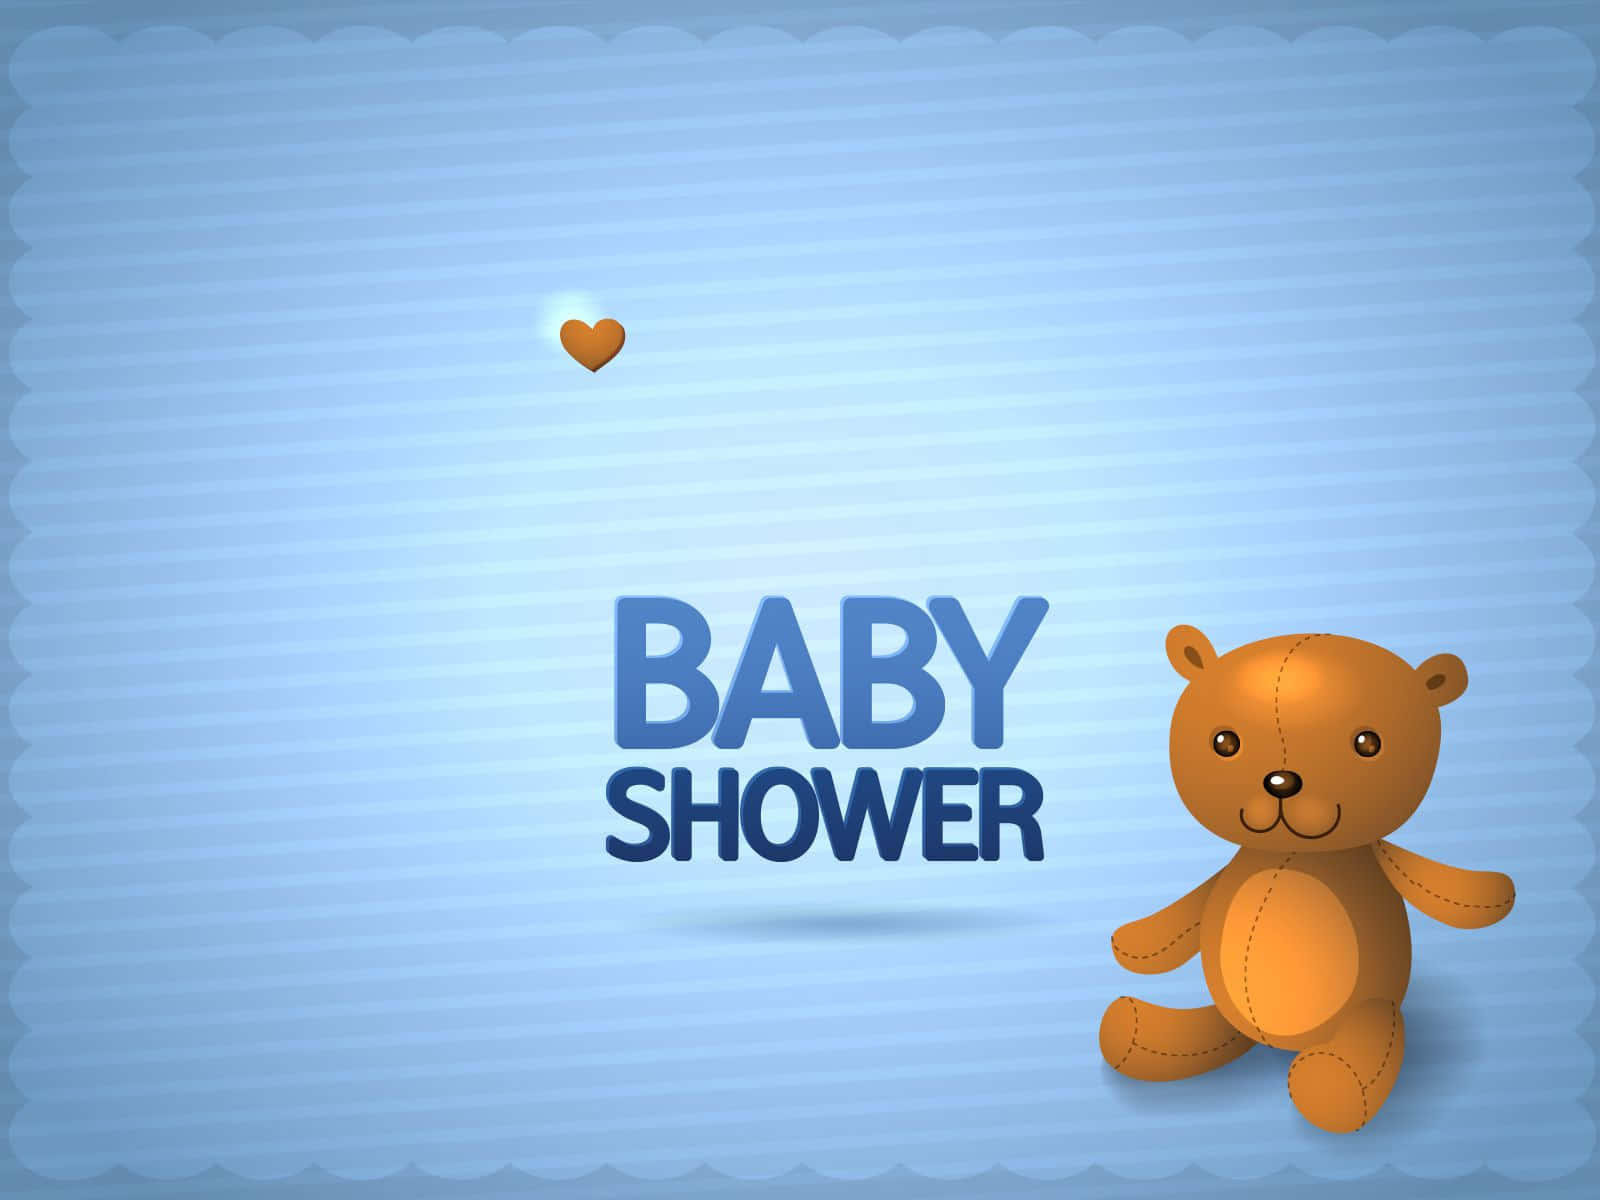 Celebraun Nuevo Regalo De Vida Con Un Baby Shower Especial